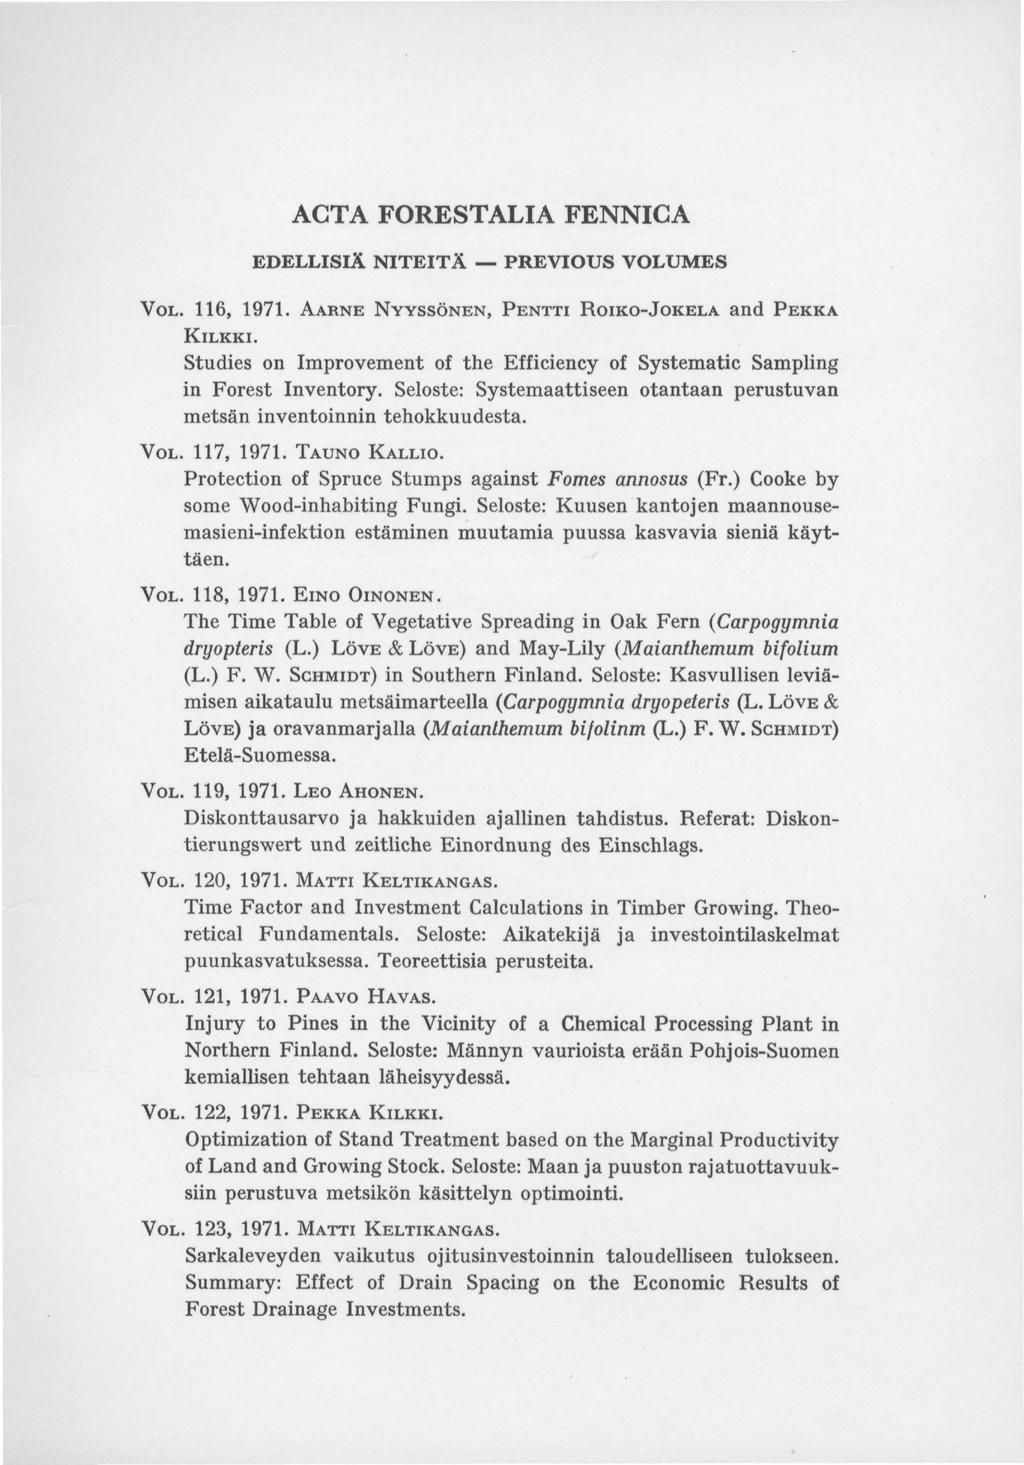 ACTA FORESTALIA FENNICA EDELLISIÄ NITEITÄ PREVIOUS VOLUMES VOL. 116, 1971. AARNE NYYSSÖNEN, PENTTI ROIKO-JOKELA and PEKKA KILKKI.